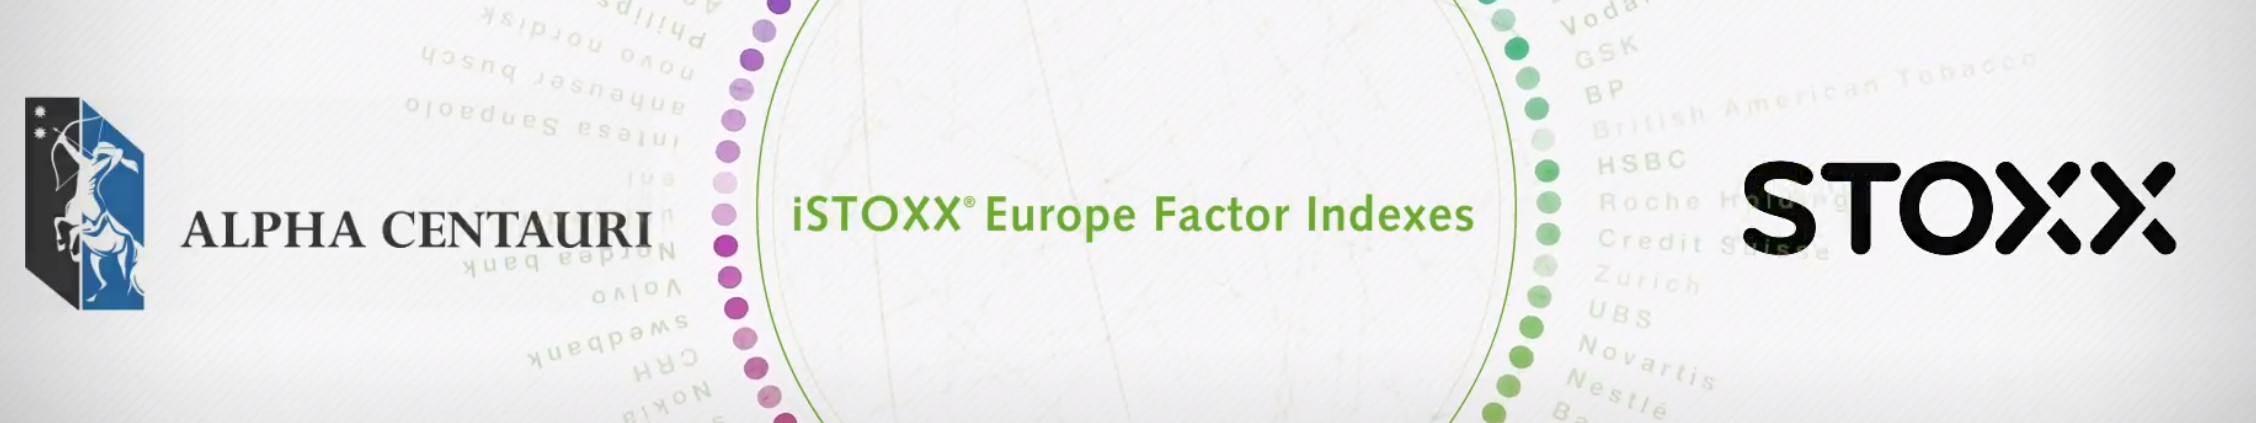 Capture risk premia  eurex istoxx  europe factor index futures 720p thumbnail striped